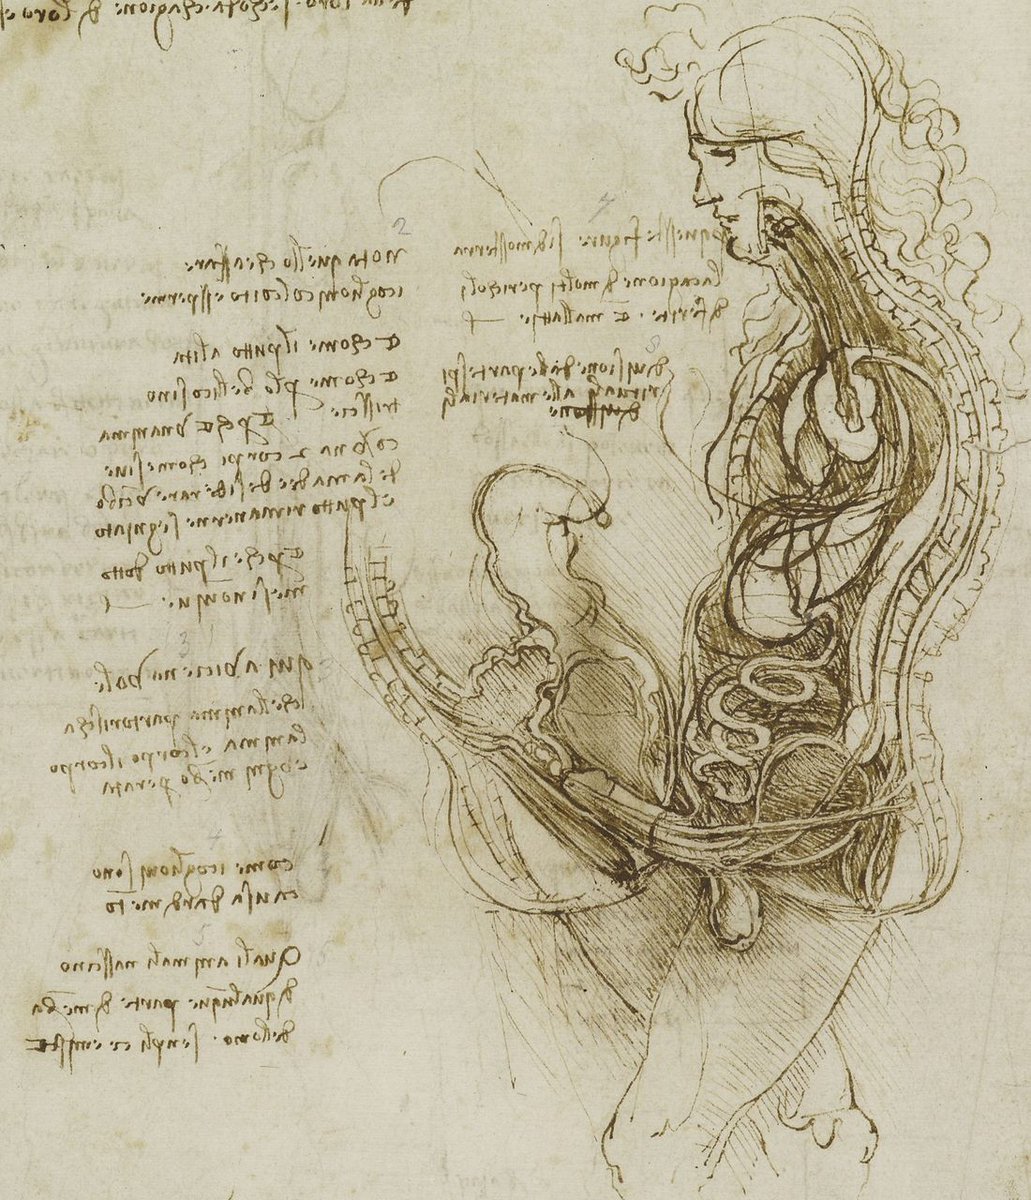 書肆ゲンシシャ 幻視者の集い Sur Twitter レオナルド ダ ヴィンチ Leonardo Da Vinci 1452 1519 による 解剖図 ルネサンスの芸術家が性交の様子を描いています 解剖学の知識を習得し 遺体解剖の現場に立ち会うこともありました 画家の目をもって観察し